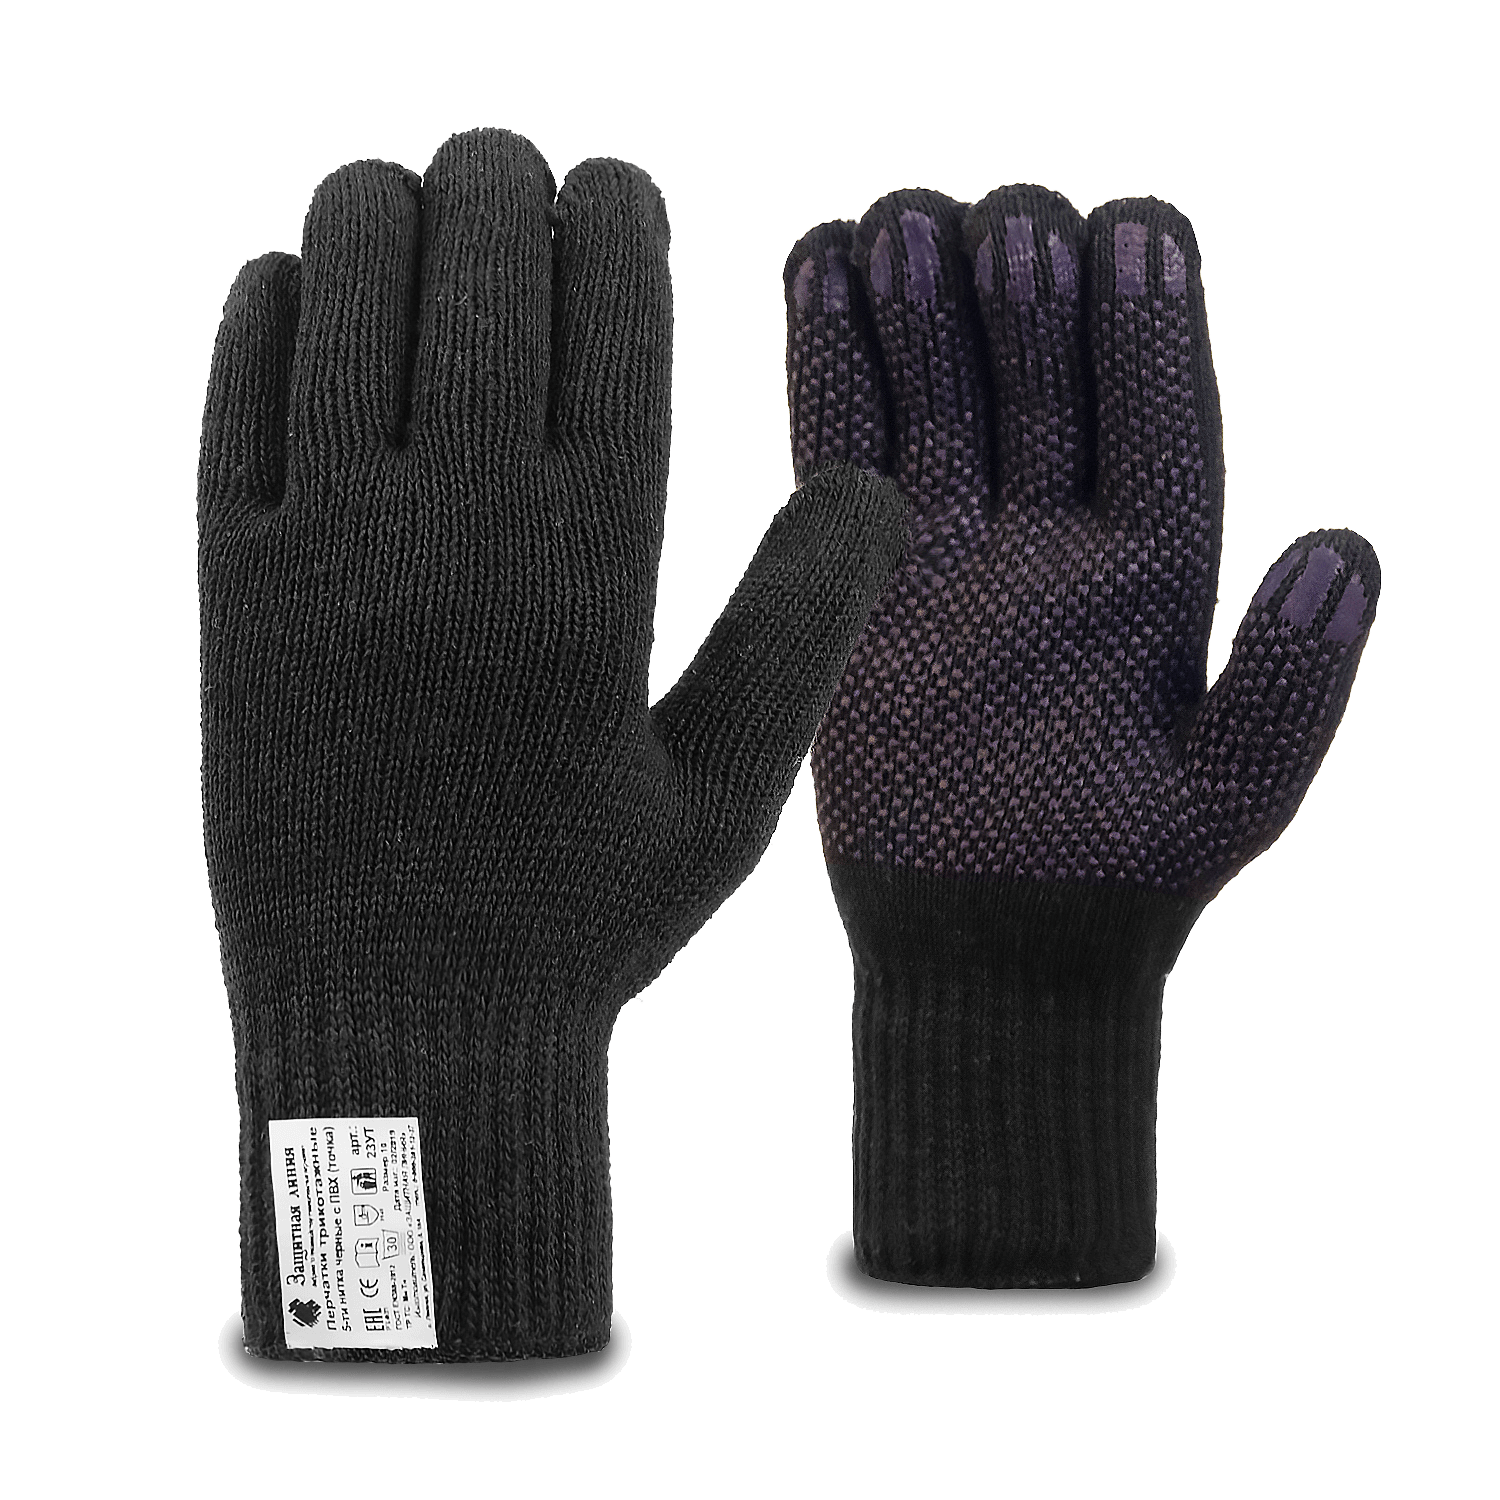 Рабочие перчатки трикотажные черные с ПВХ (точка), 5-нитей, 7,5 класс, по ГОСТ с маркировкой